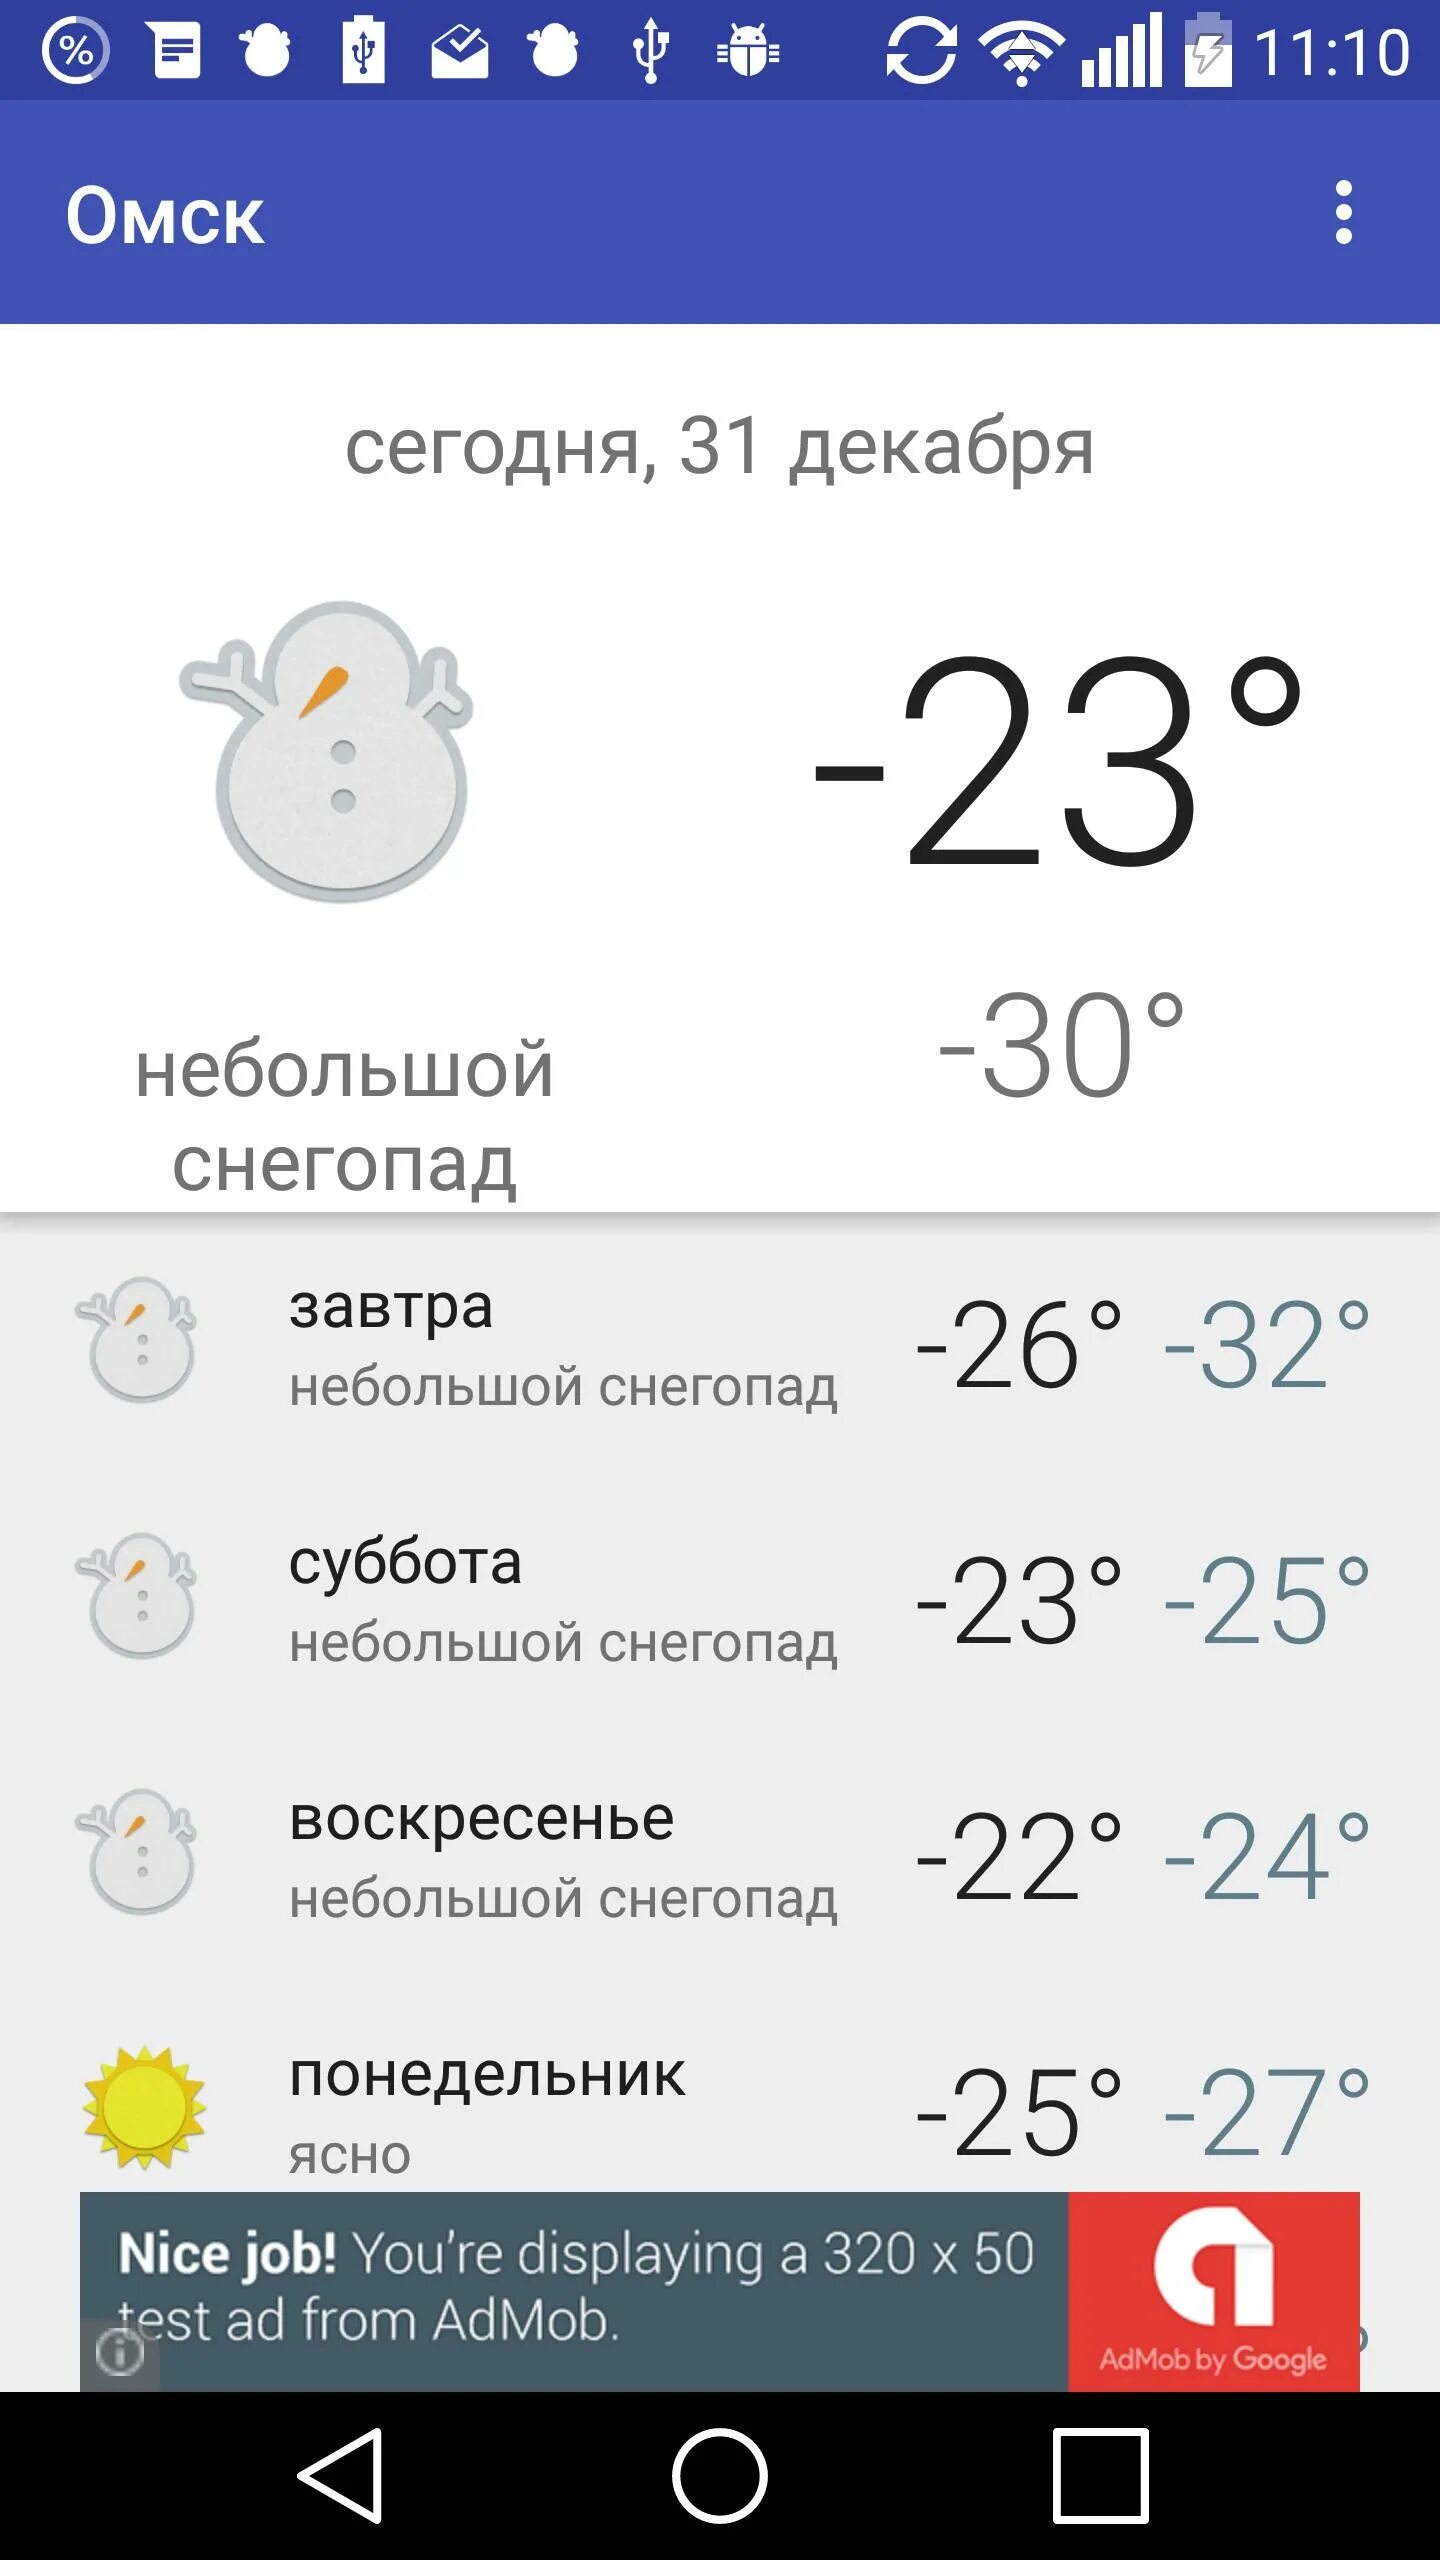 Погода оренбург завтра точная по часам. Погода в Нижнем новгорл. Погода в Воронеже. Погодавнижнимнавгороде. Погода в Омске.